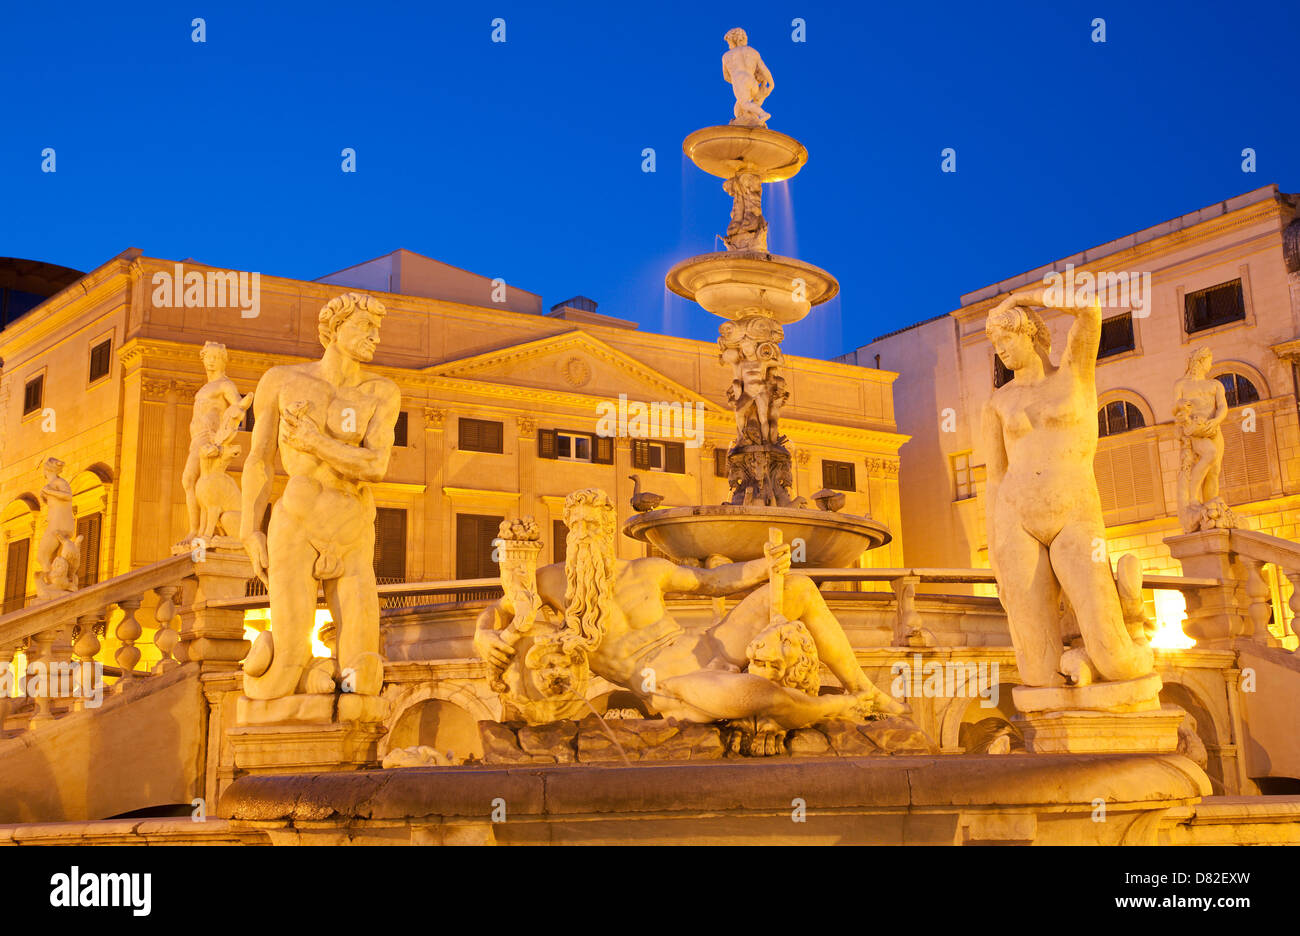 Palermo - Florentine founiain on Piazza Pretoria at dusk Stock Photo